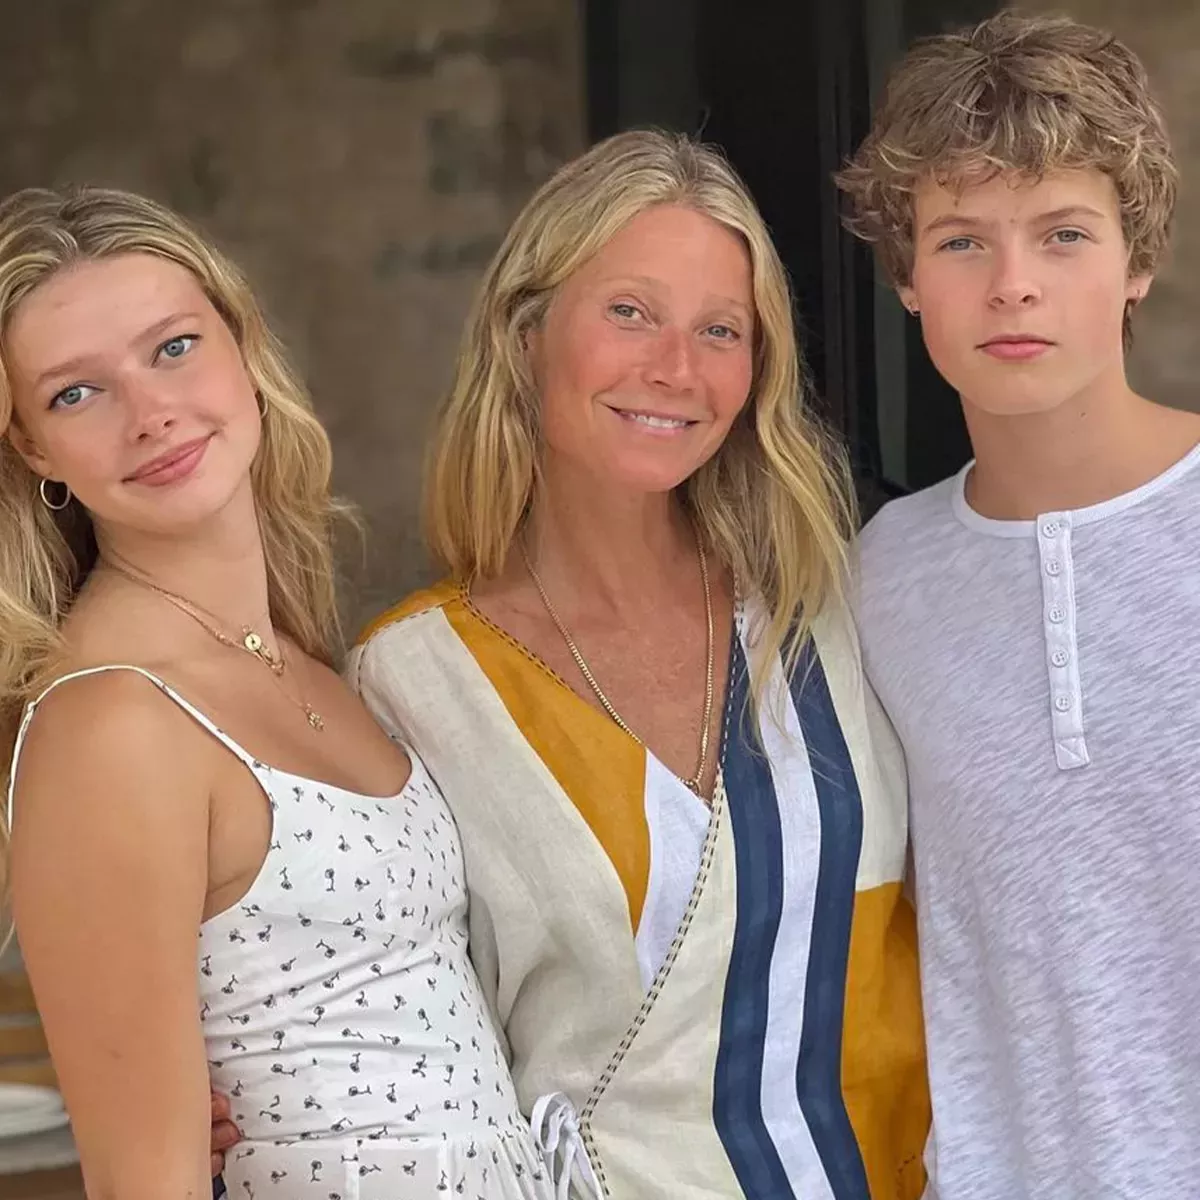 Juicio de Gwyneth Paltrow: La hija de Apple Martin dice que su madre estaba "conmocionada" tras el accidente de esquí